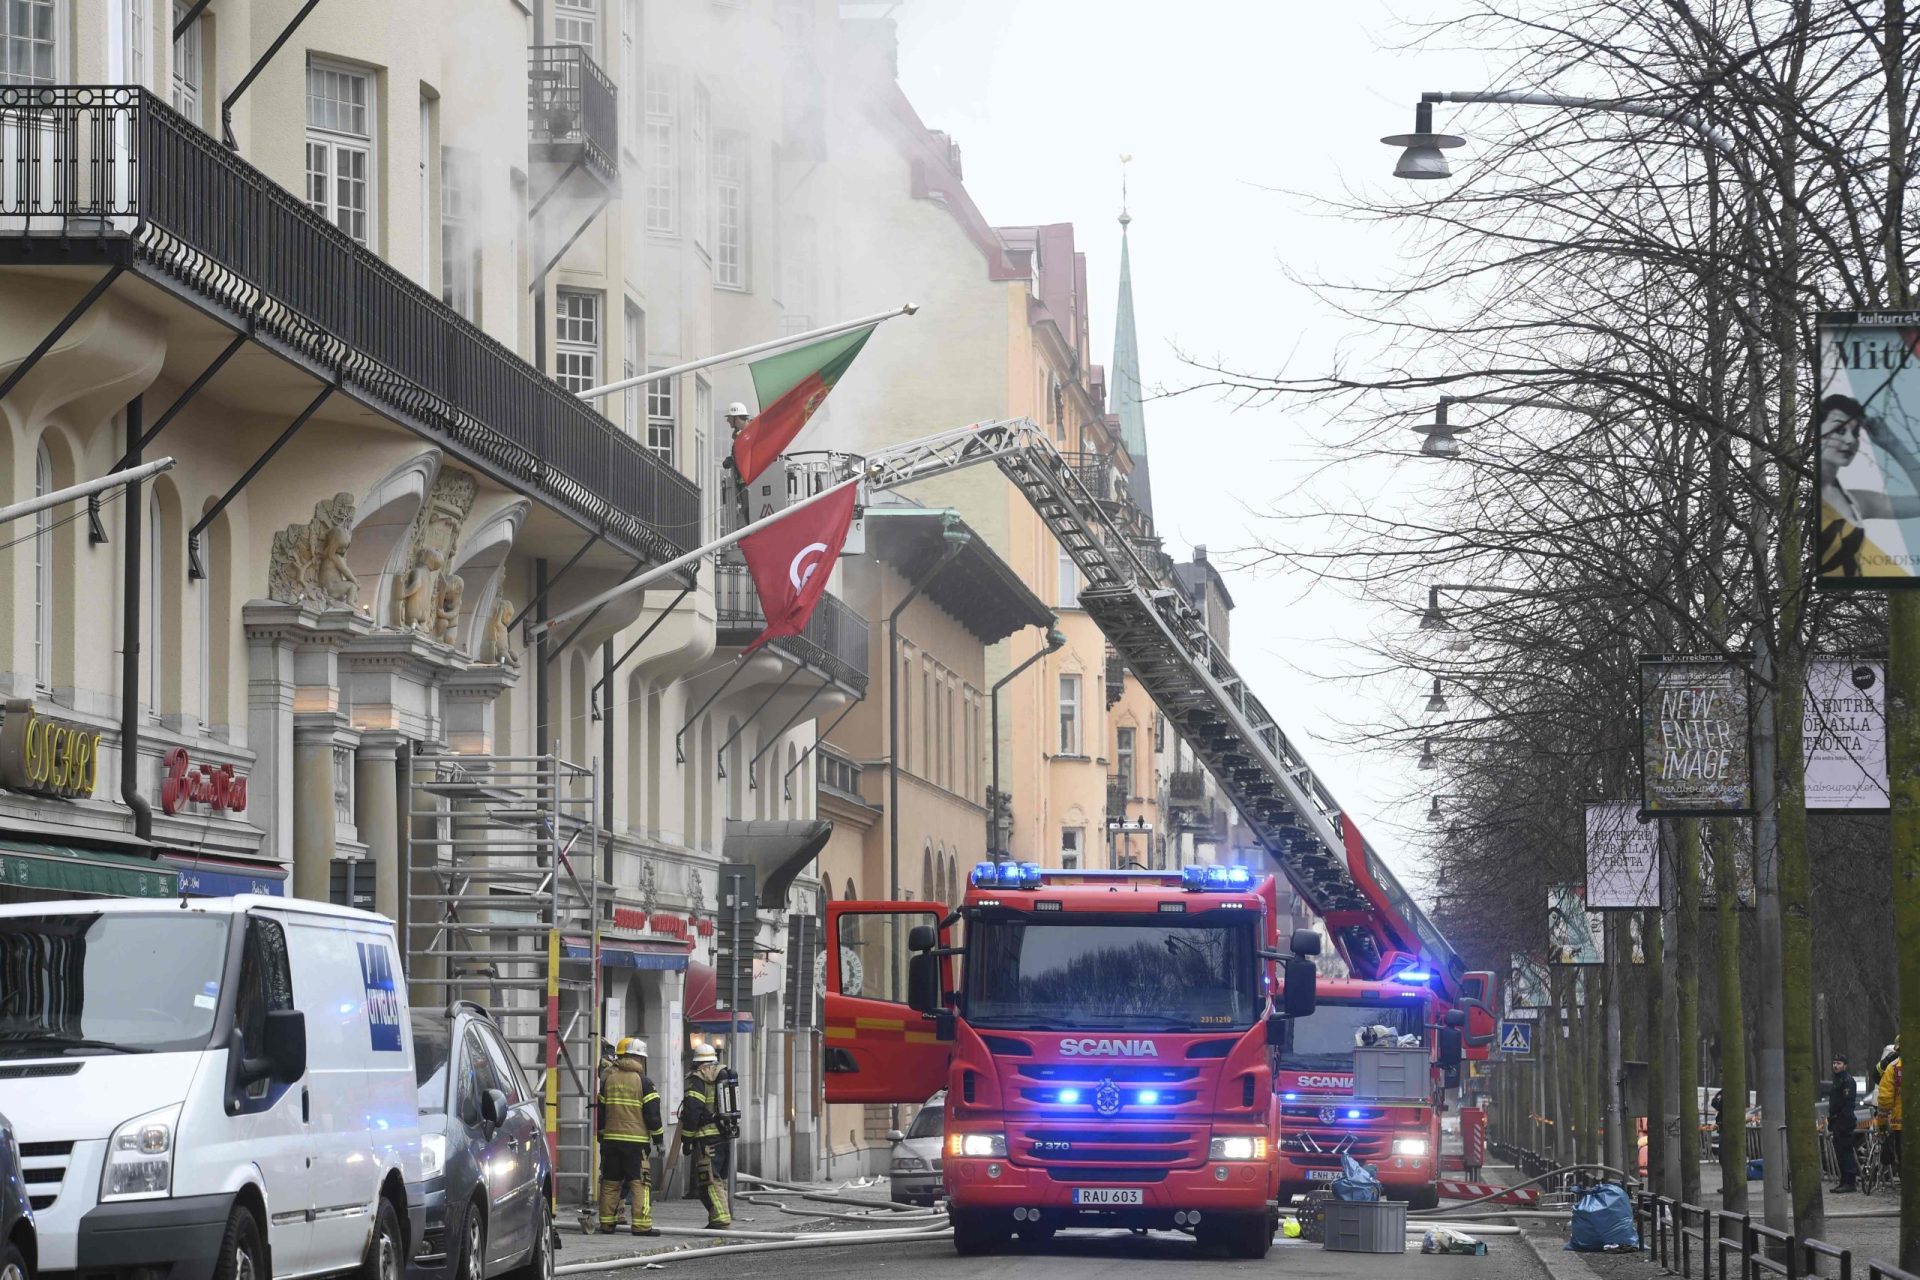 Suécia. Incêndio na embaixada portuguesa foi provocado por &#8220;homem muito perturbado&#8221;